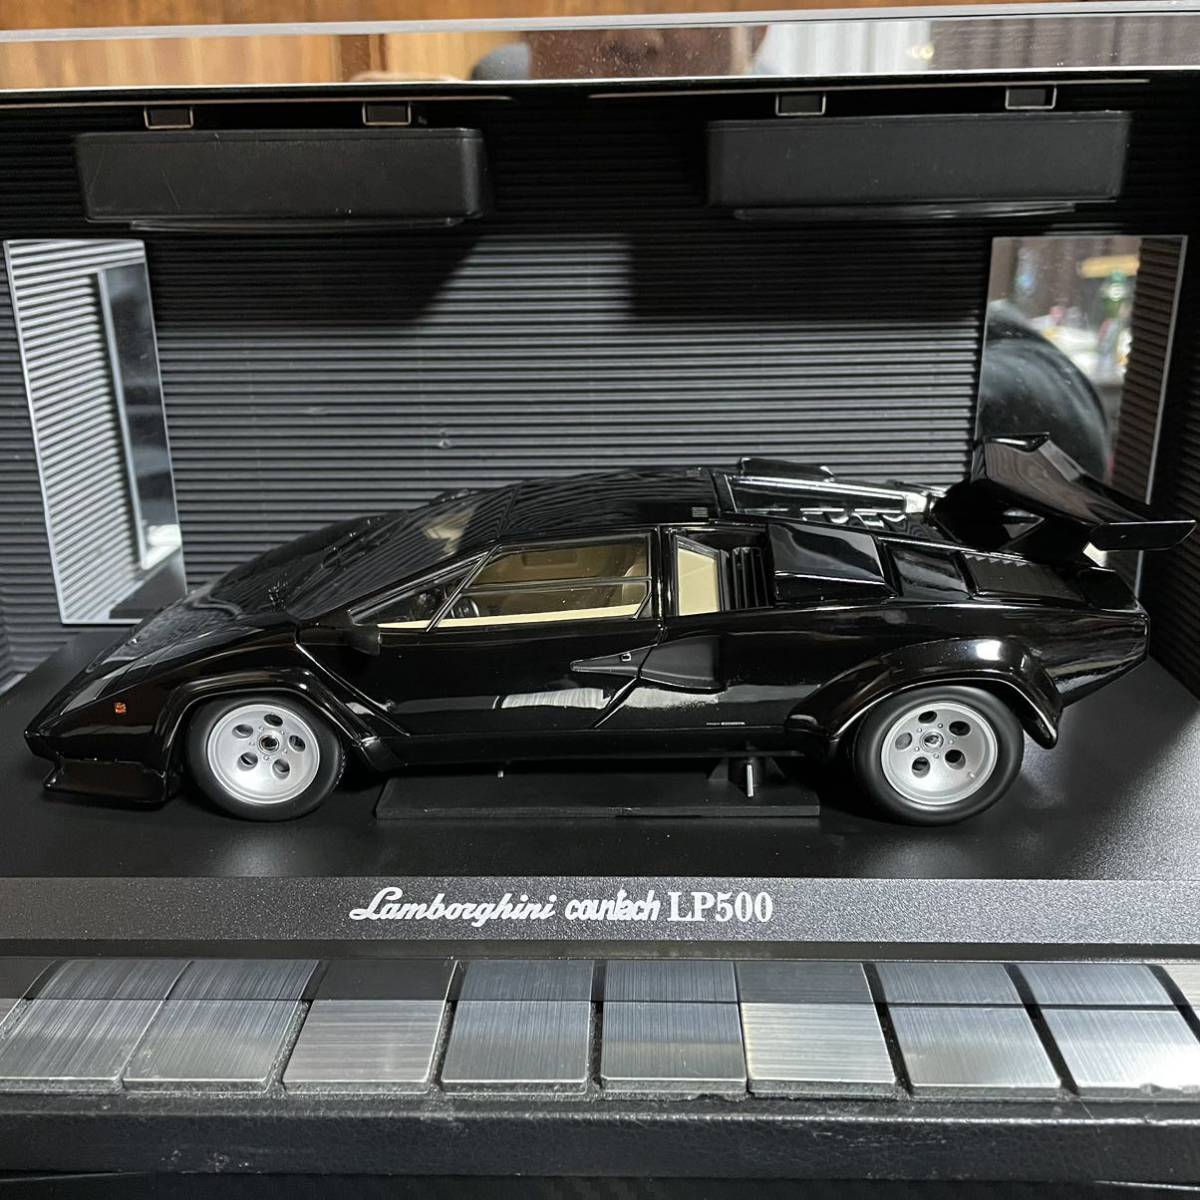  распроданный не выставленный товар Kyosho 1/18 Lamborghini счетчик kLP500 черный 